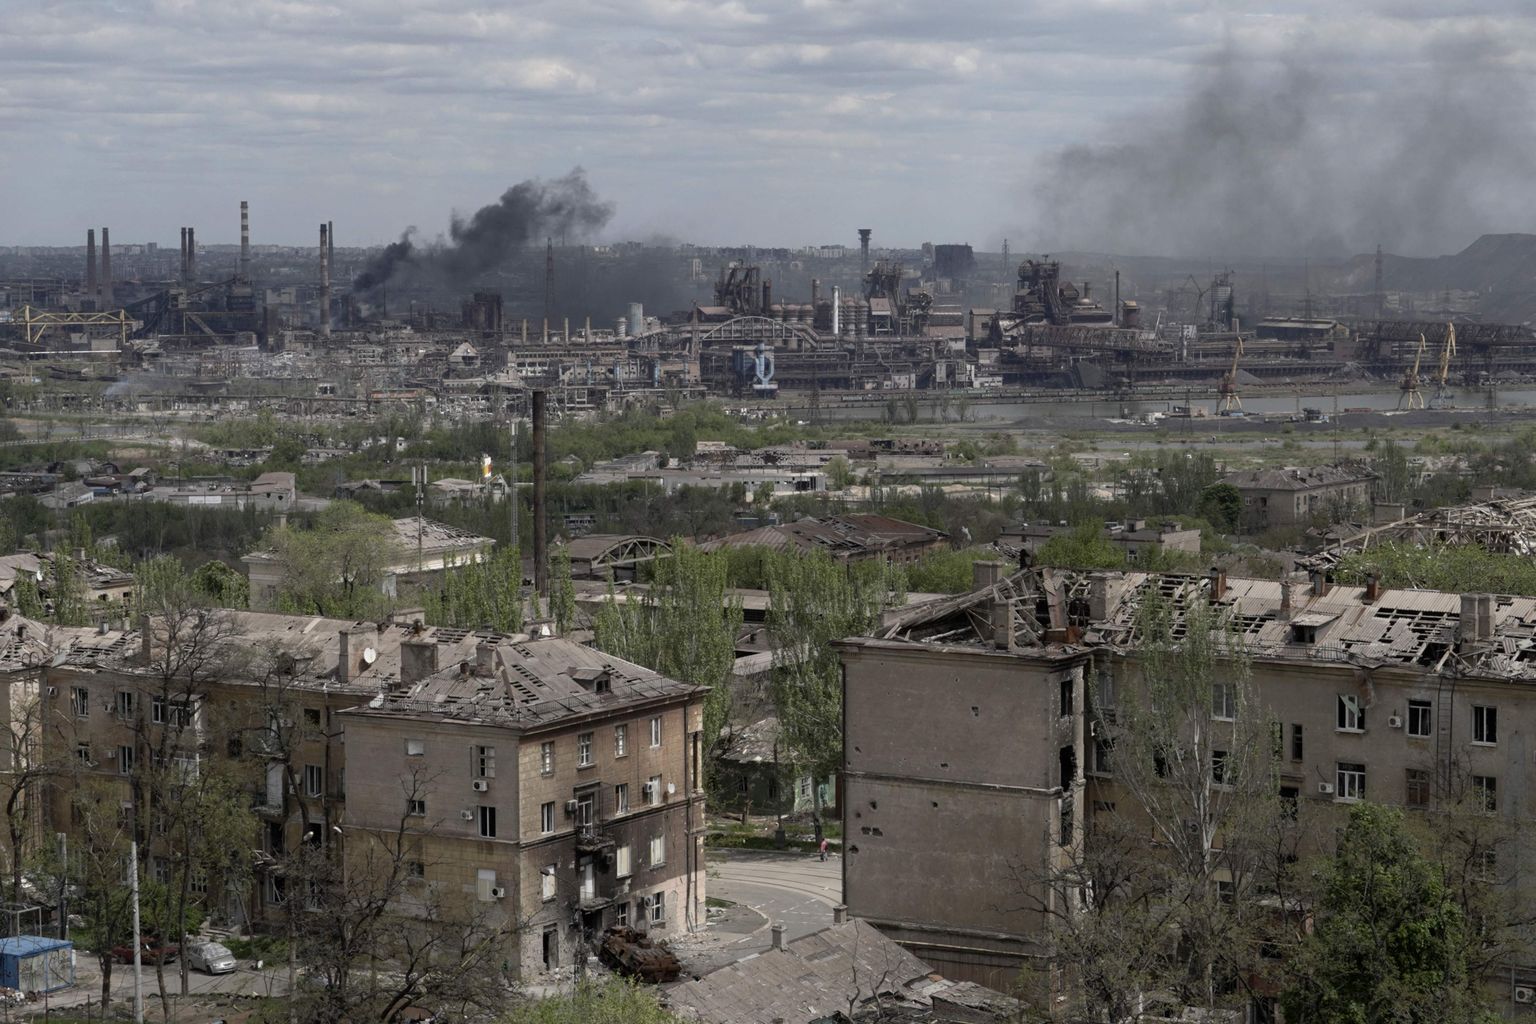 Lõuna-Ukraina linn Mariupol, mis on Vene vägede kätte langemas, ning sealne Azovstali terasetehas, millest Ukraina armeel õnnestus evakueerida haavata saanud sõdureid, kes viidi Vene vägede käes olevatesse paikadesse. Ukraina loodab oma sõdurid vahetada nende käes olevate Vene sõdurite vastu